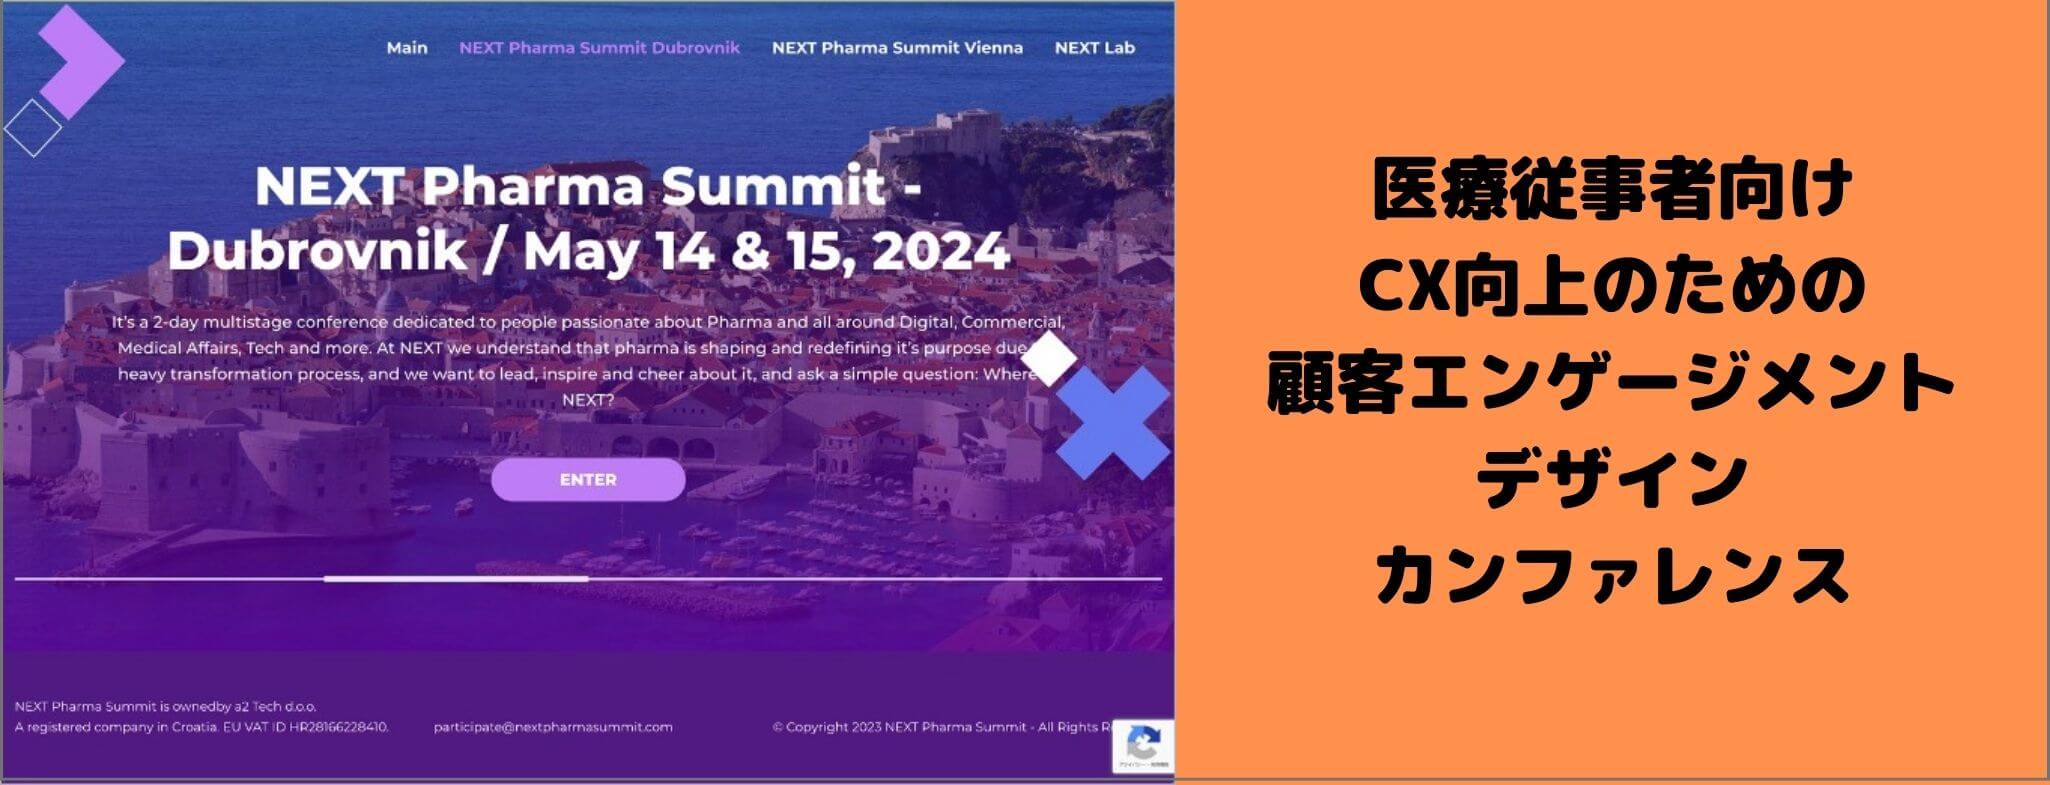 NEXT Pharma Summit